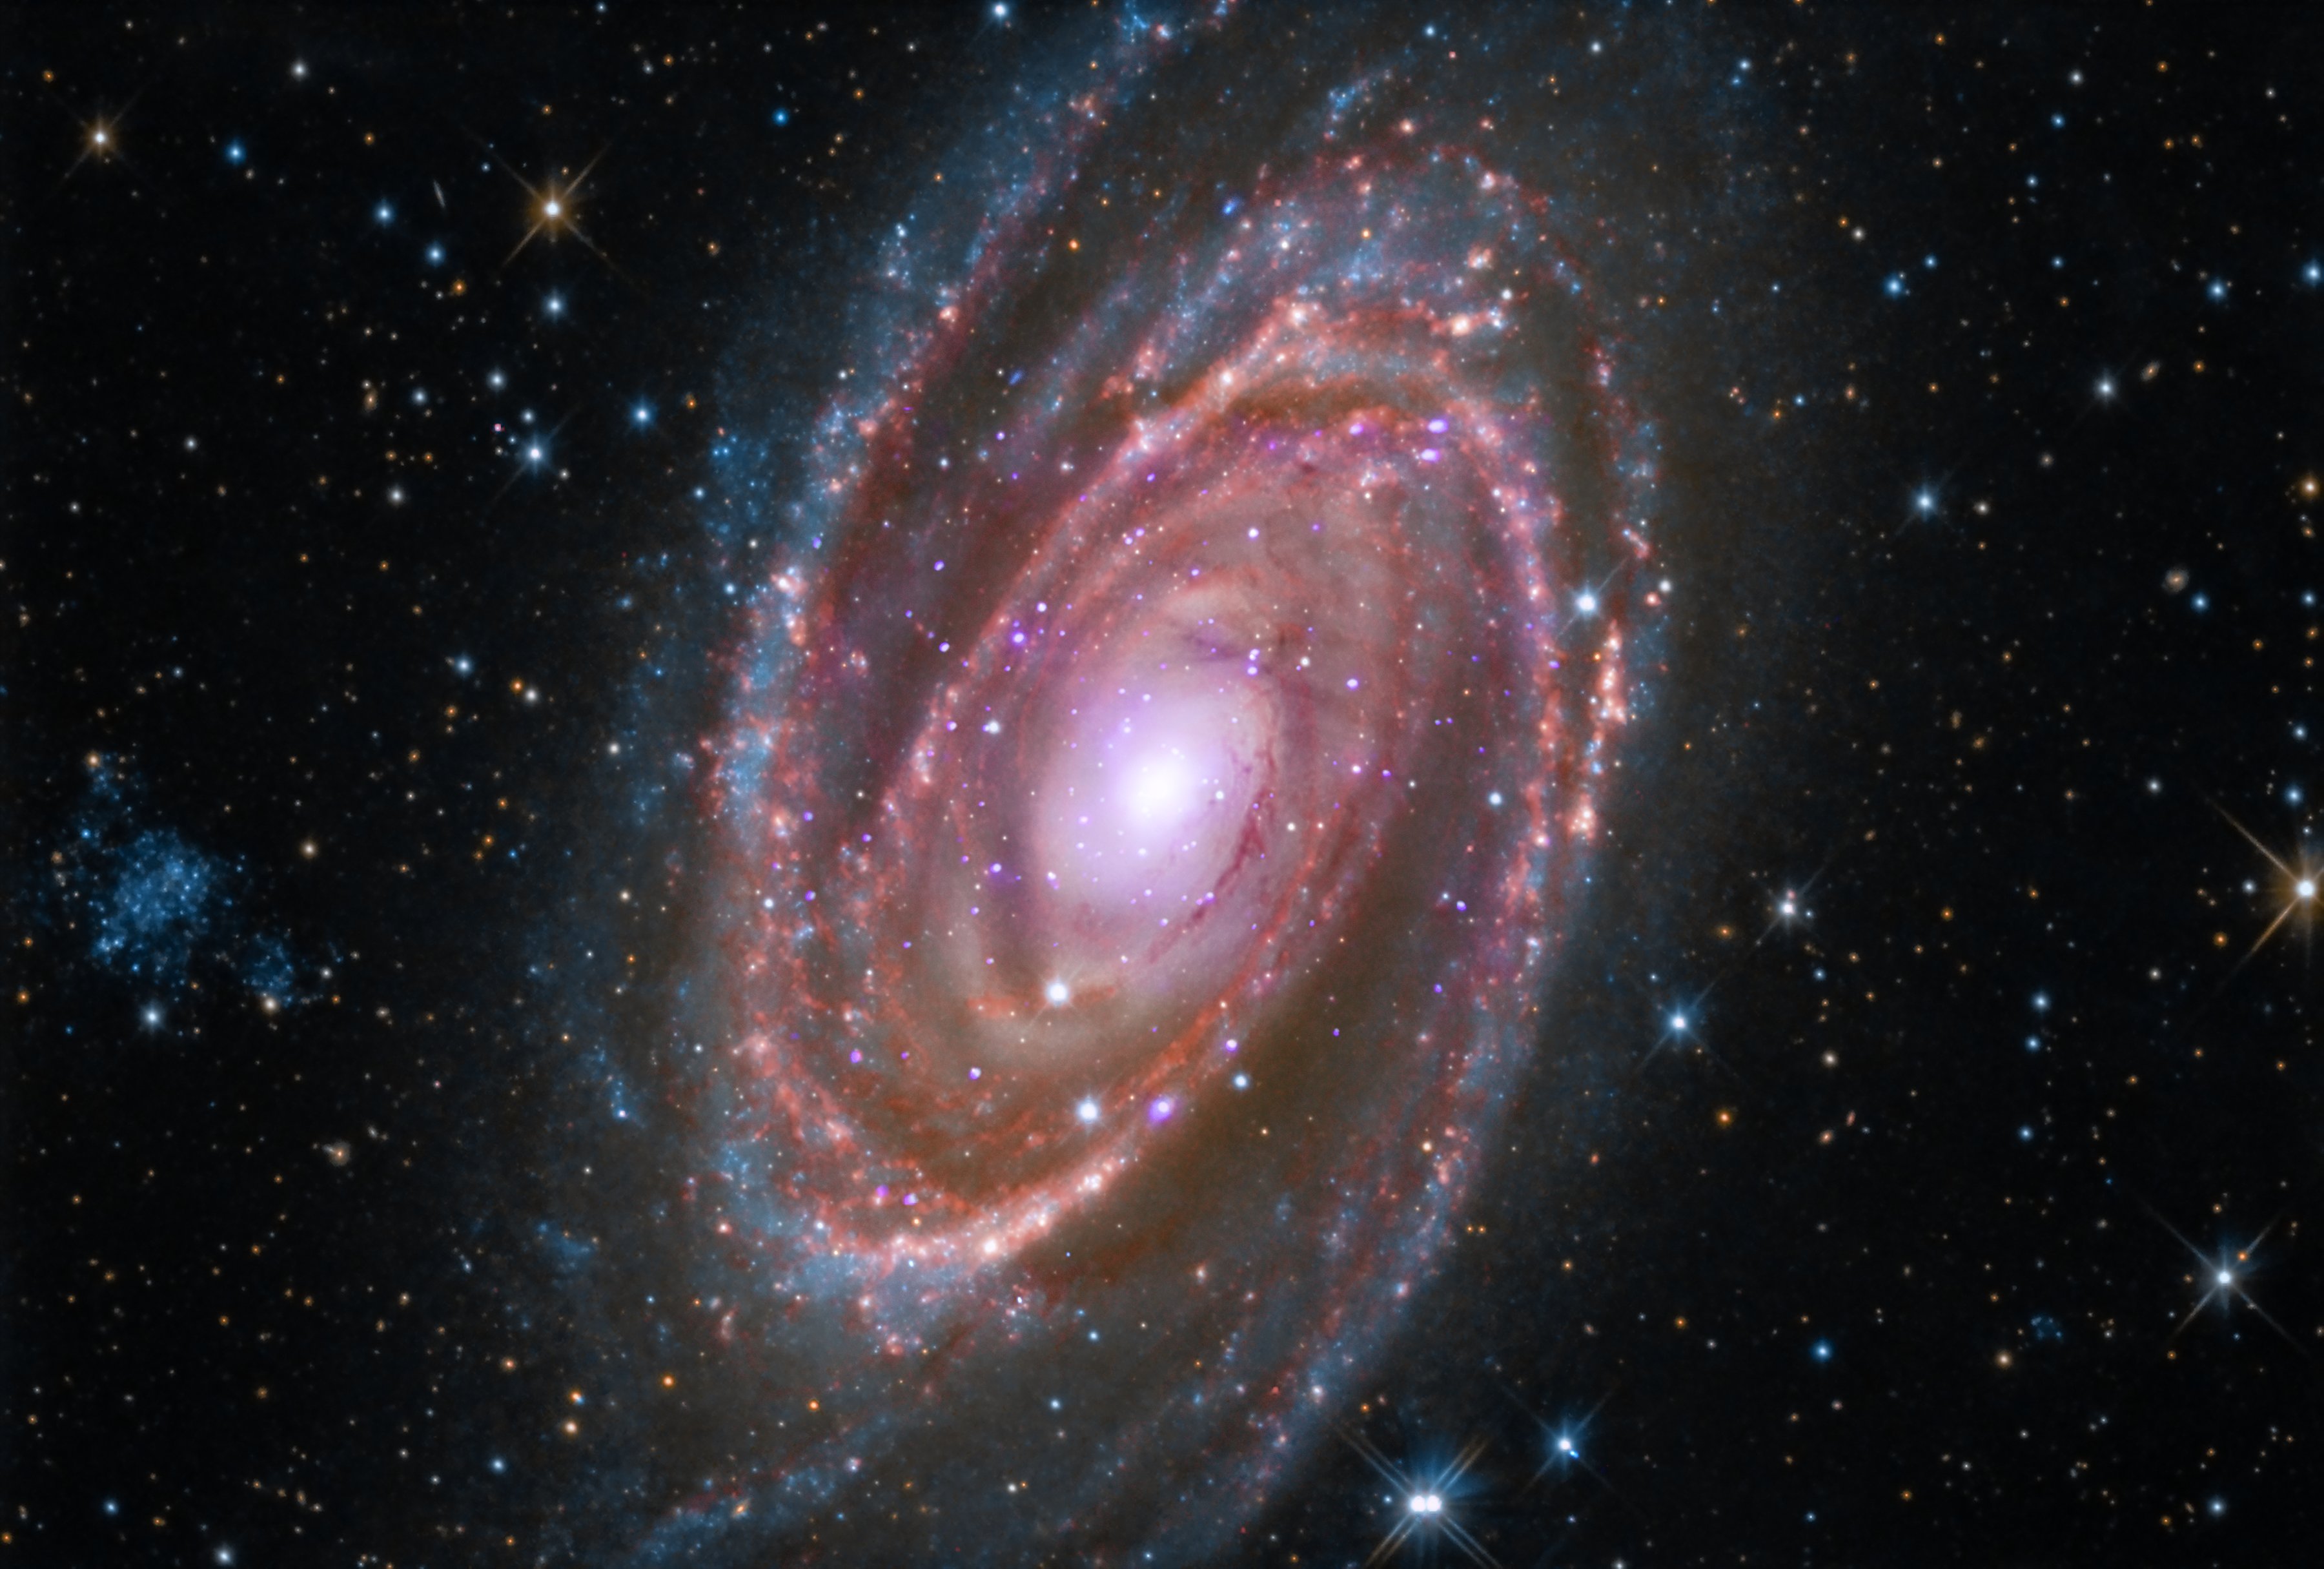 Het spiraalstelsel M 81 bevindt zich op ongeveer 12 miljoen lichtjaar van de aarde.